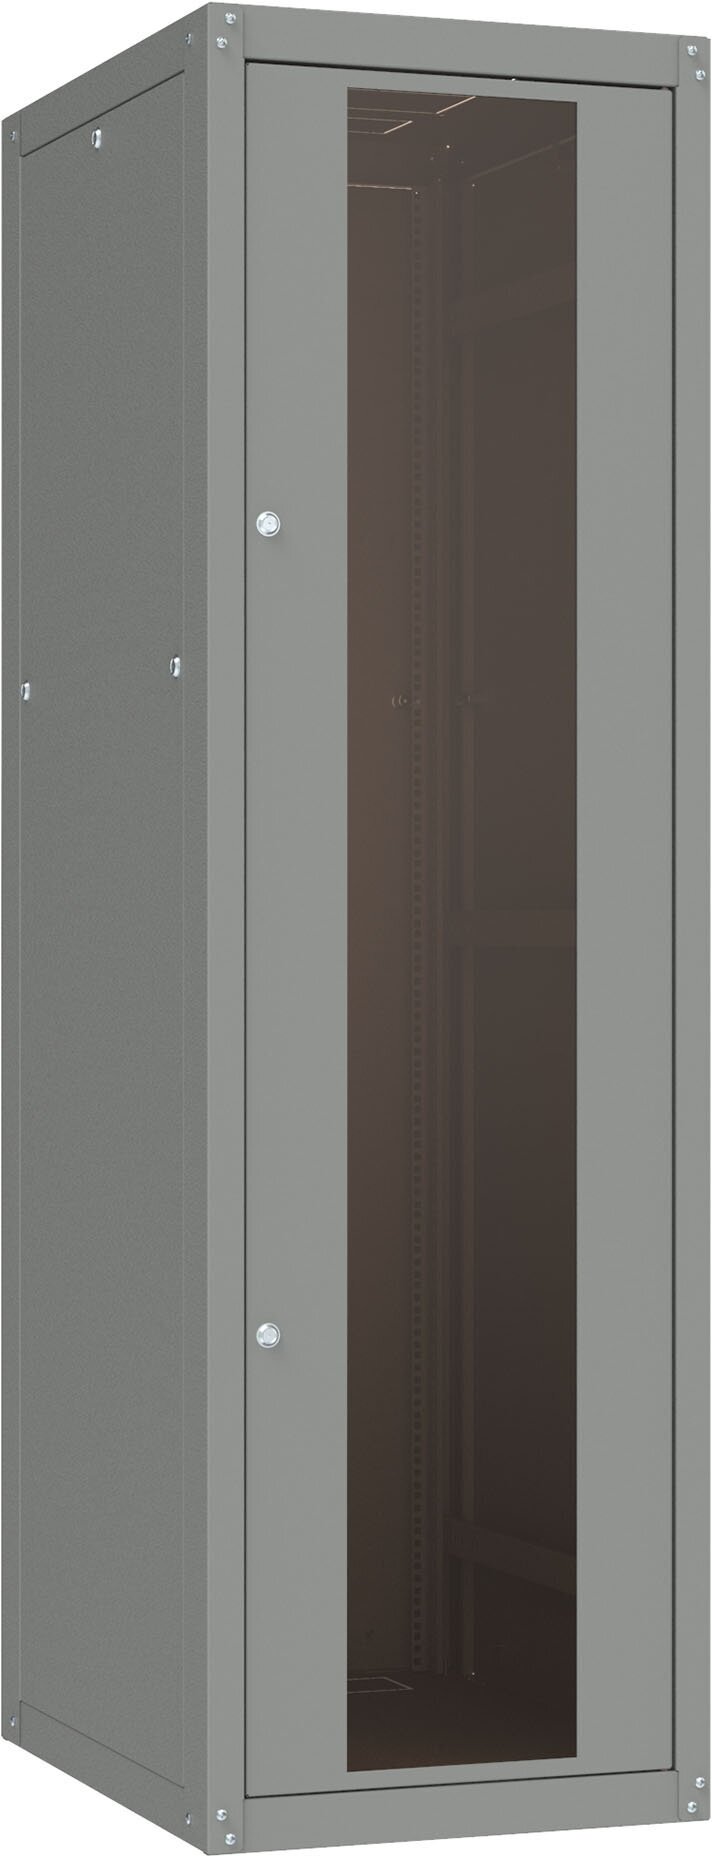 Шкаф коммутационный NT Basic.2 33-66. GF13. SD2. BF22 G (565886) напольный 33U 600x600мм пер. дв. стекл задн. дв. спл. стал